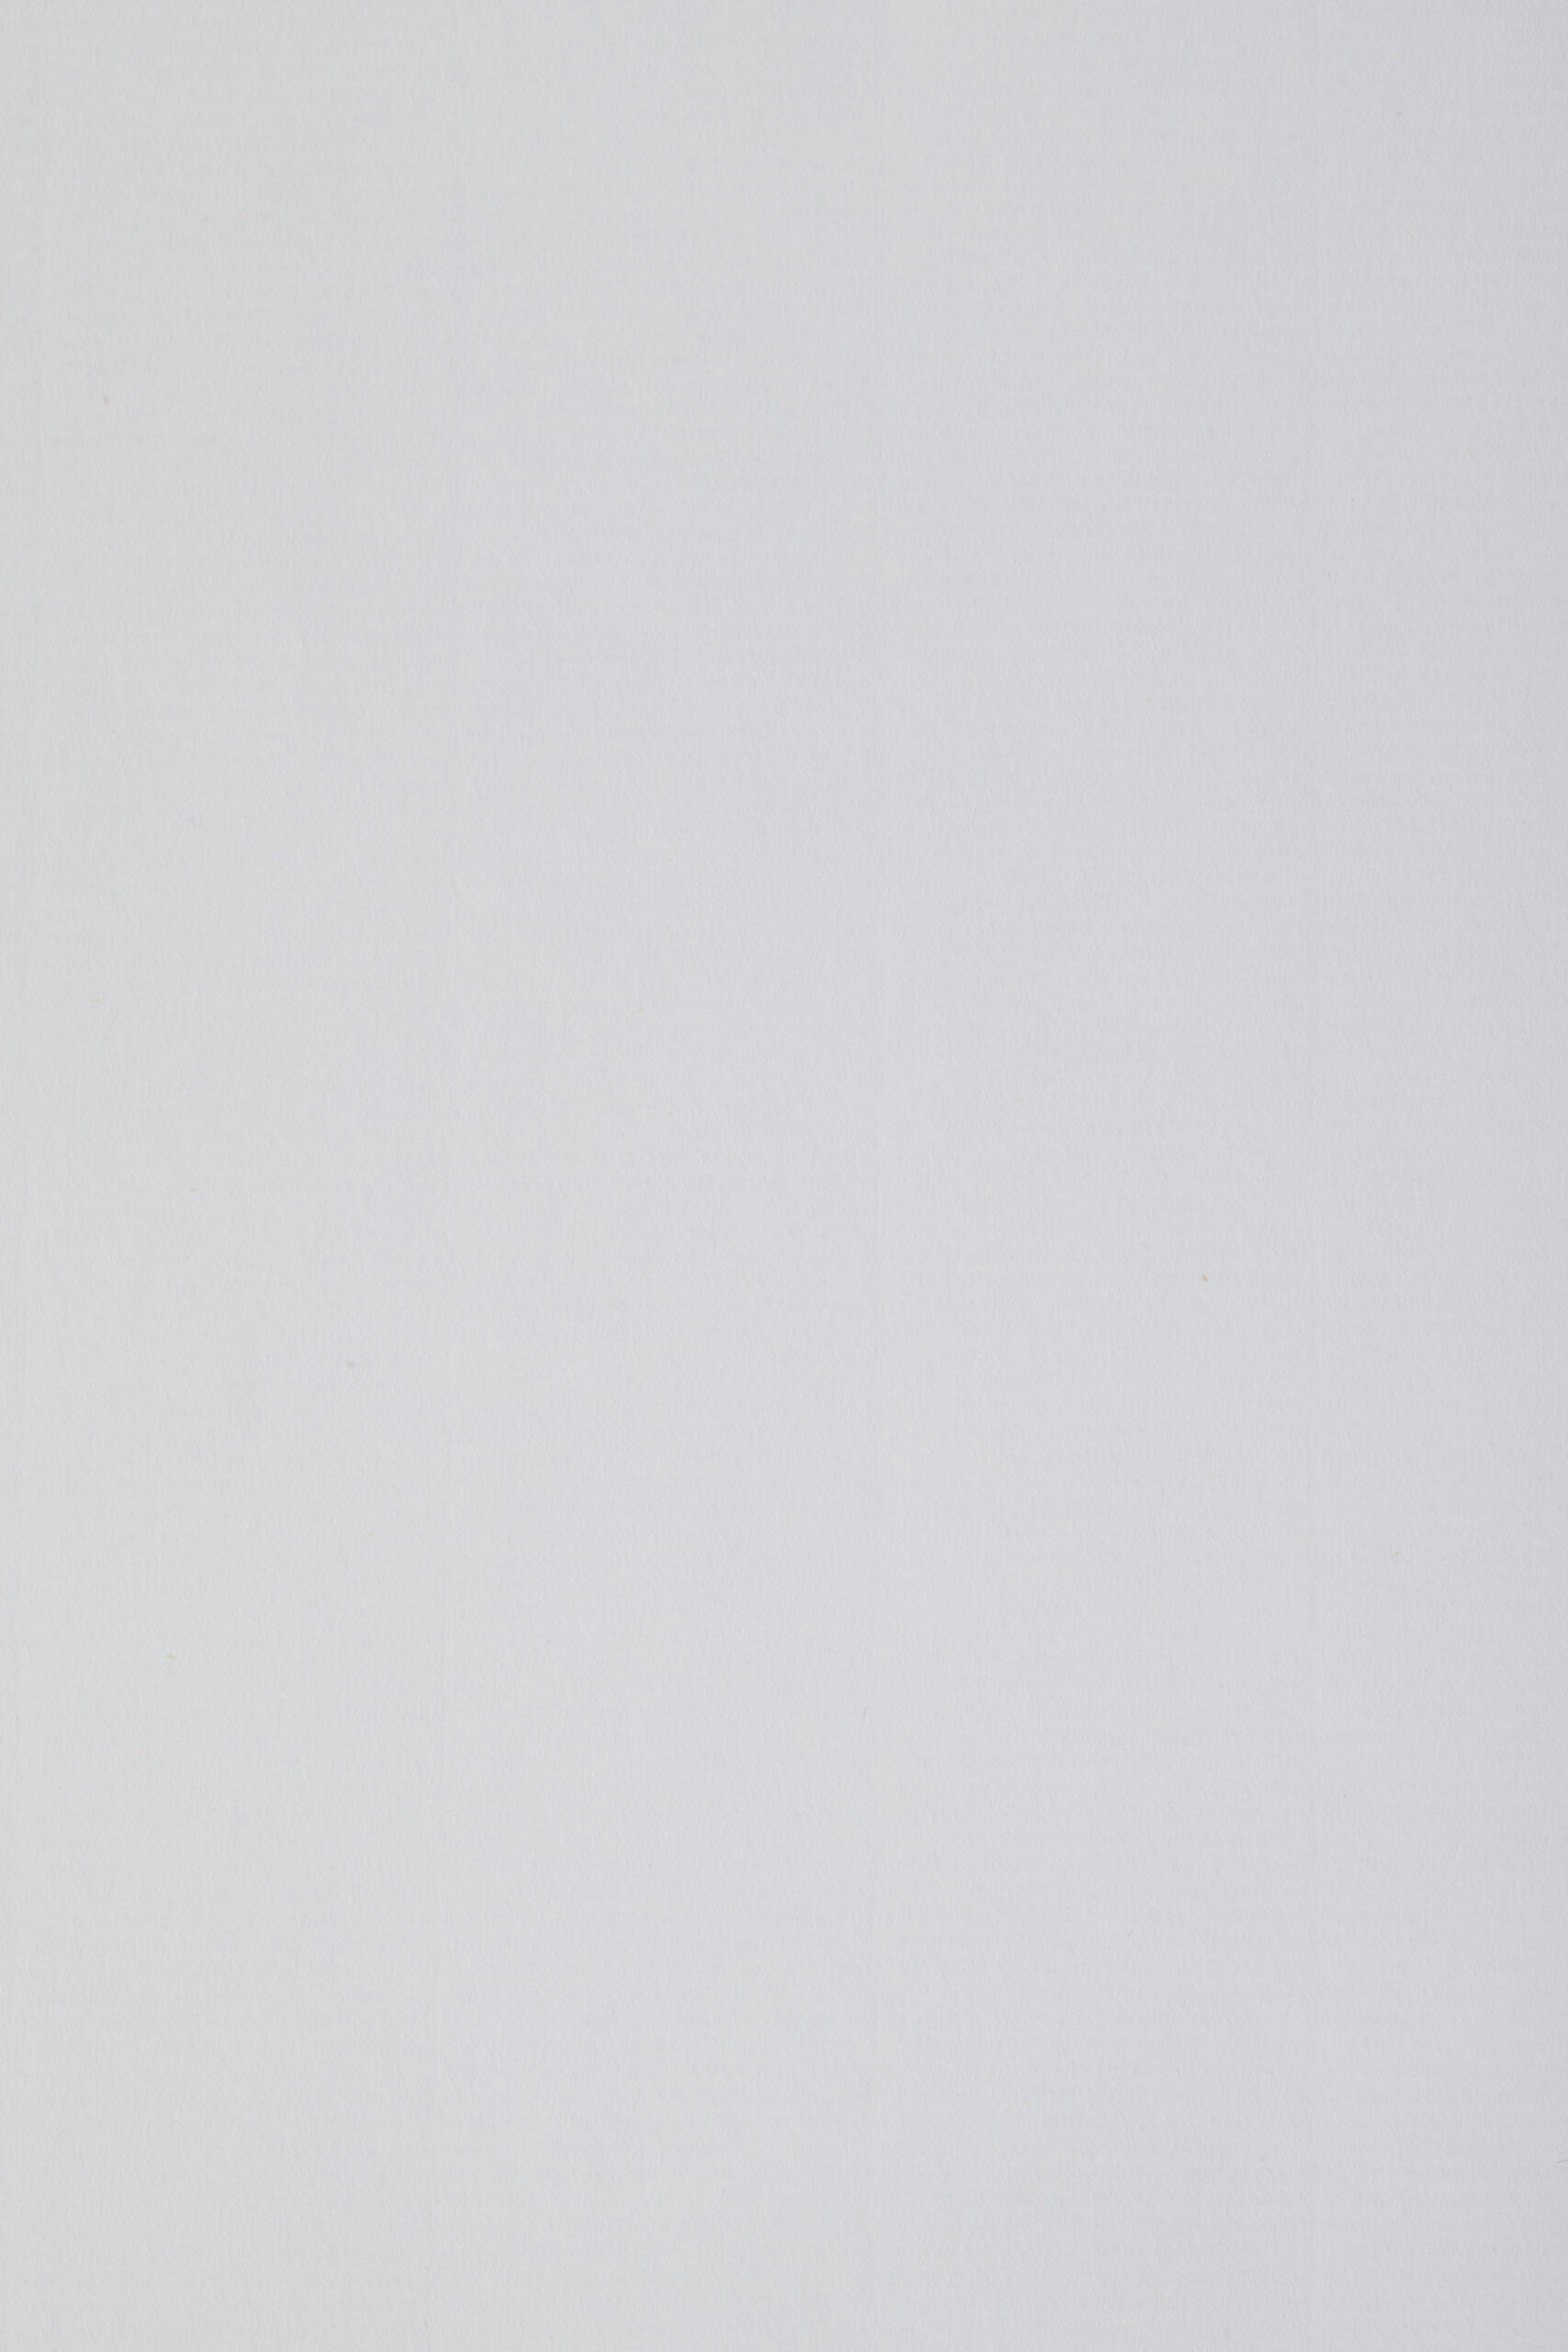 COROLLA LABEL PREMIUM WHITE 72x101 gr. 80